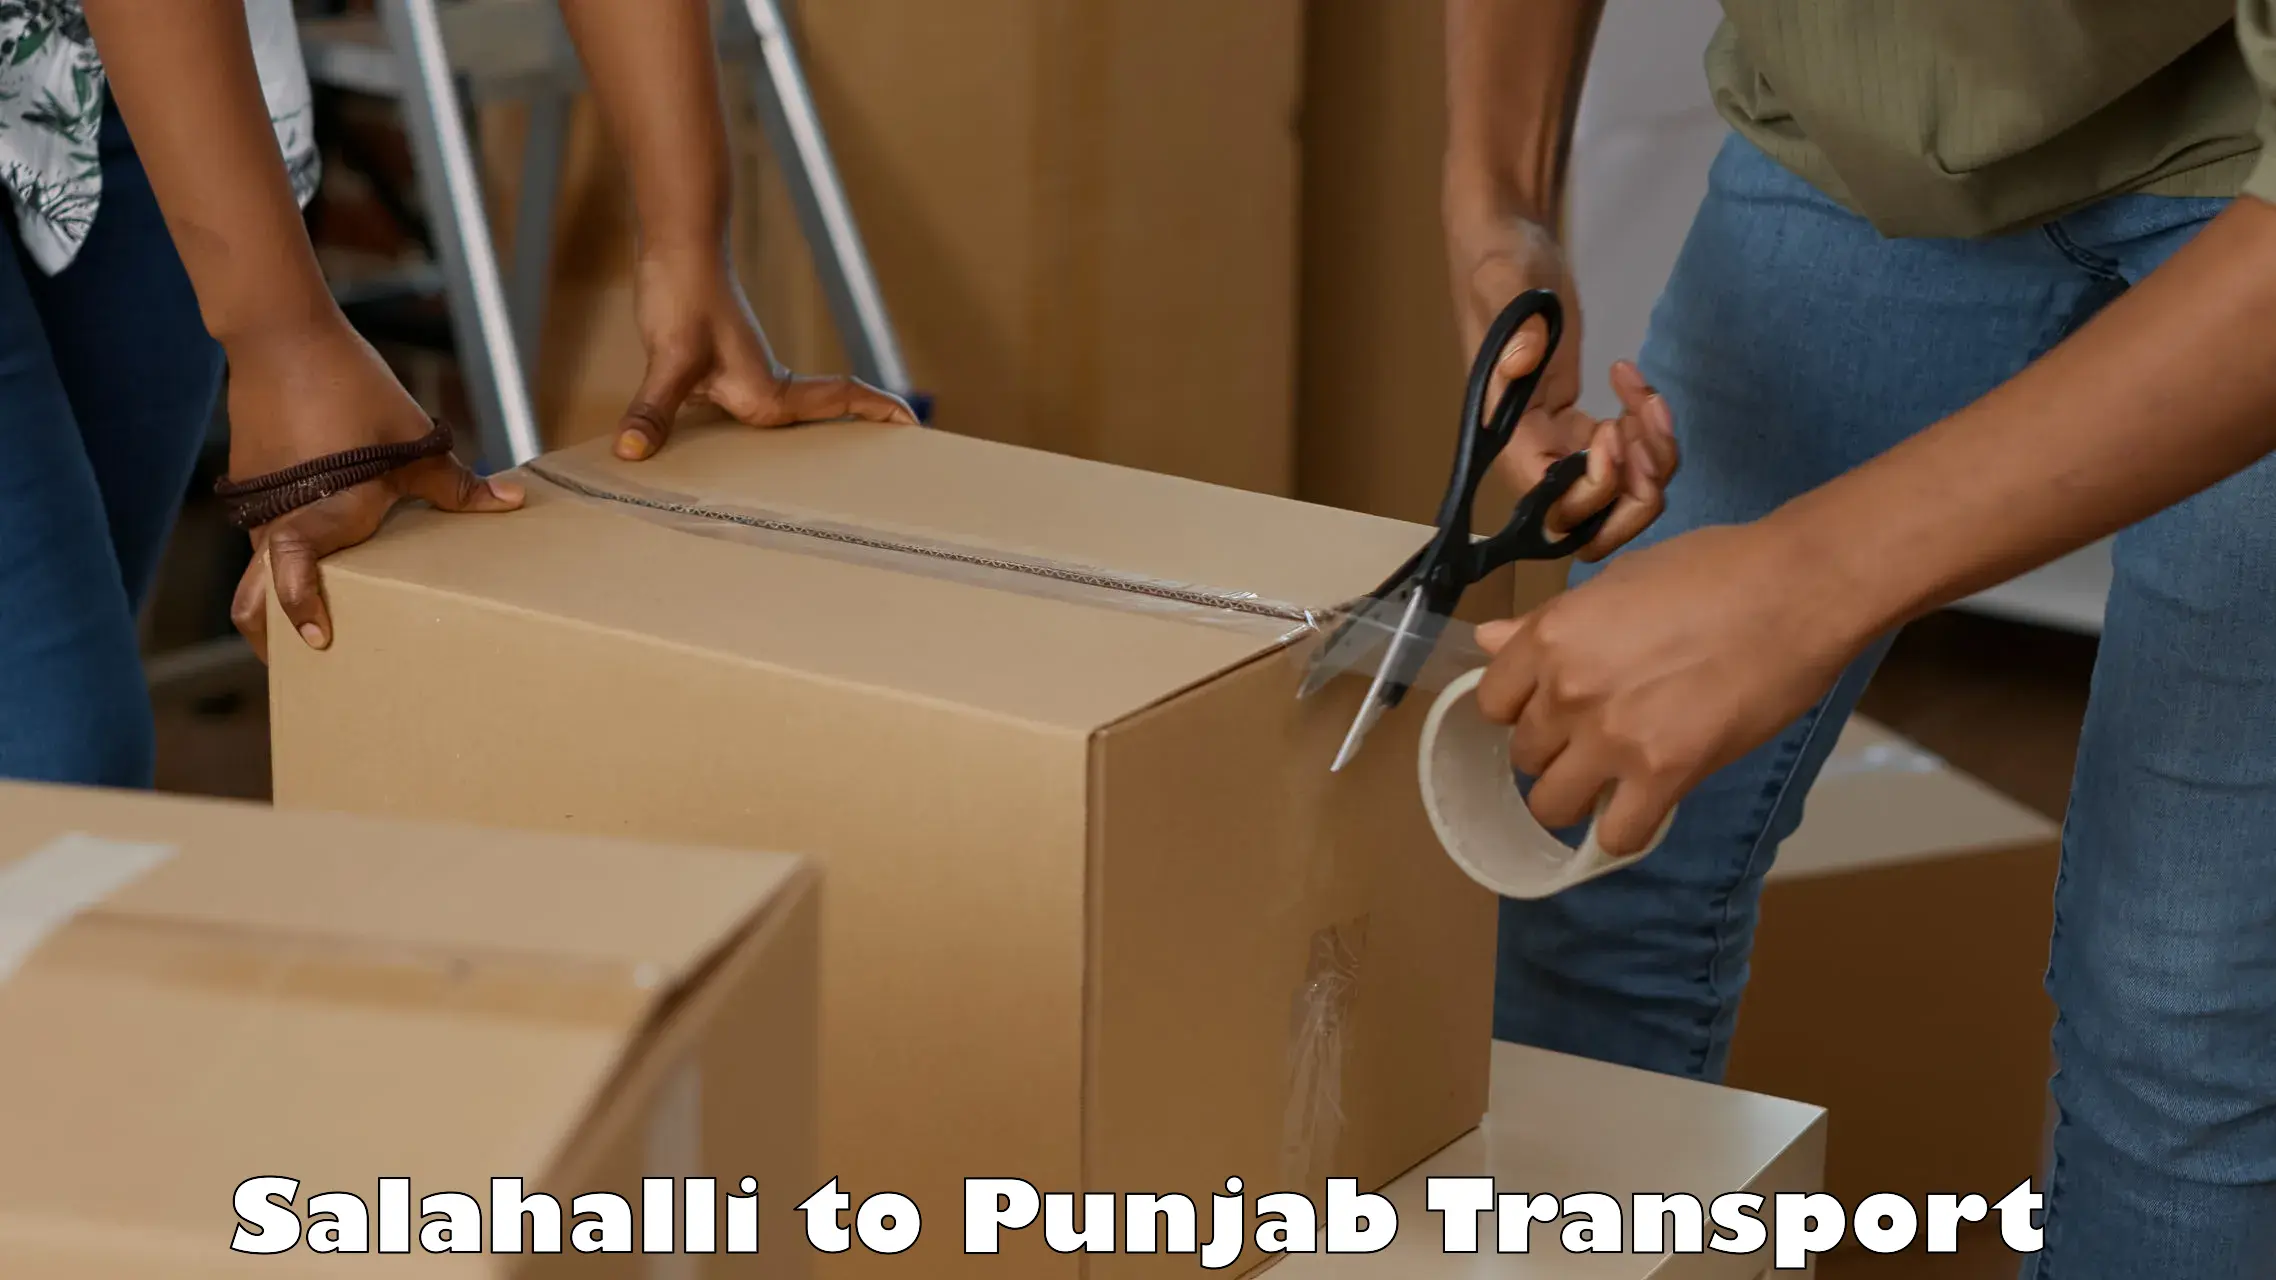 Truck transport companies in India Salahalli to Malerkotla